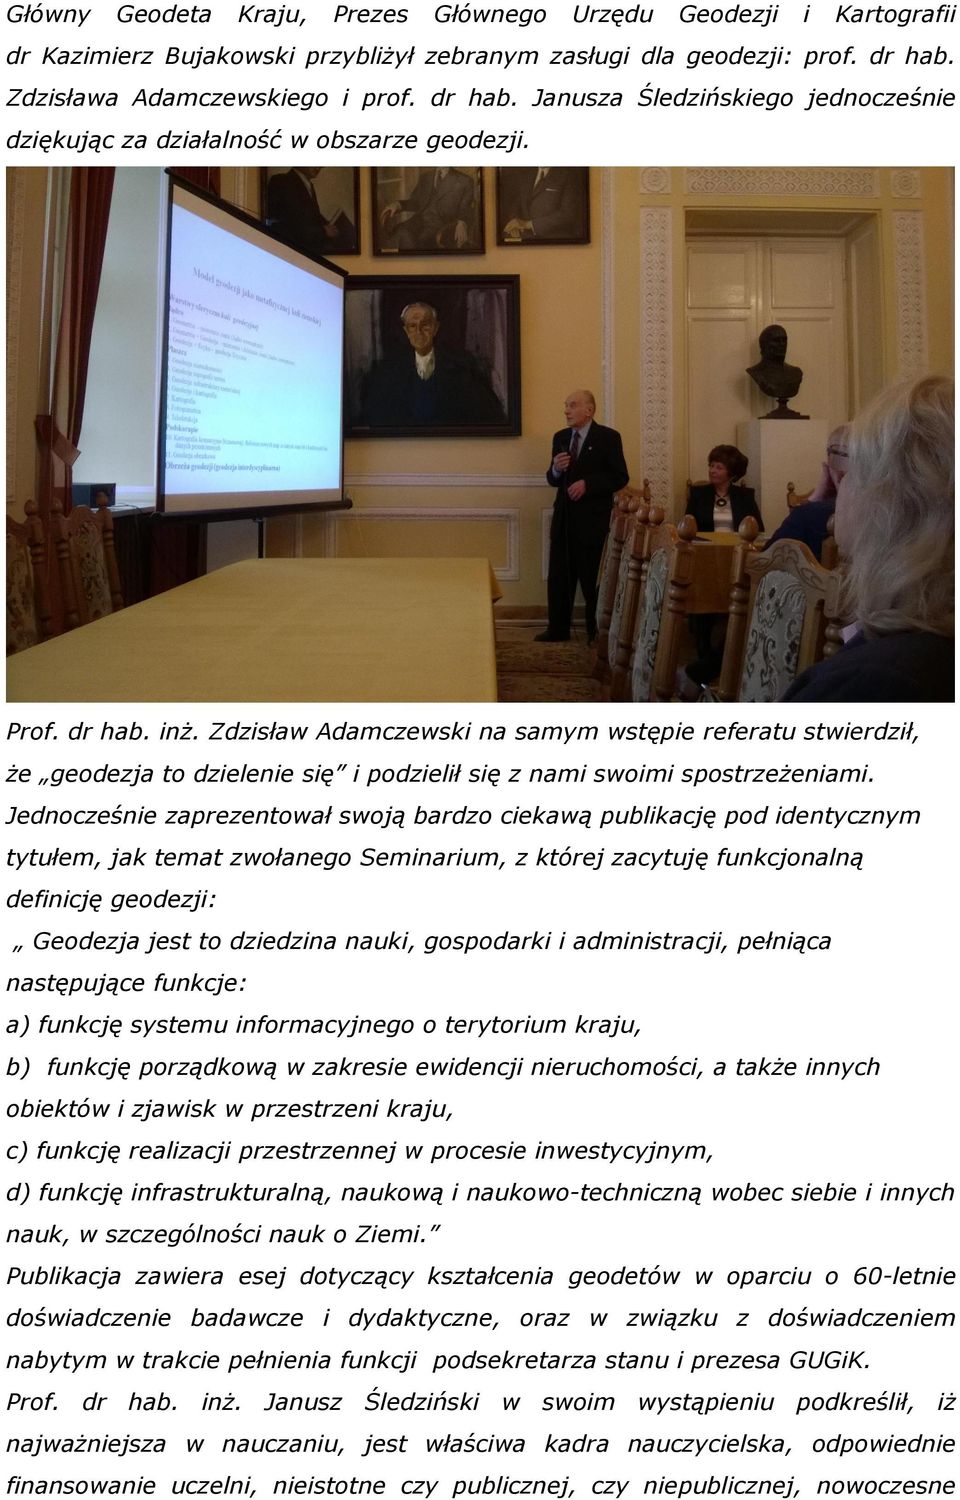 Zdzisław Adamczewski na samym wstępie referatu stwierdził, że geodezja to dzielenie się i podzielił się z nami swoimi spostrzeżeniami.